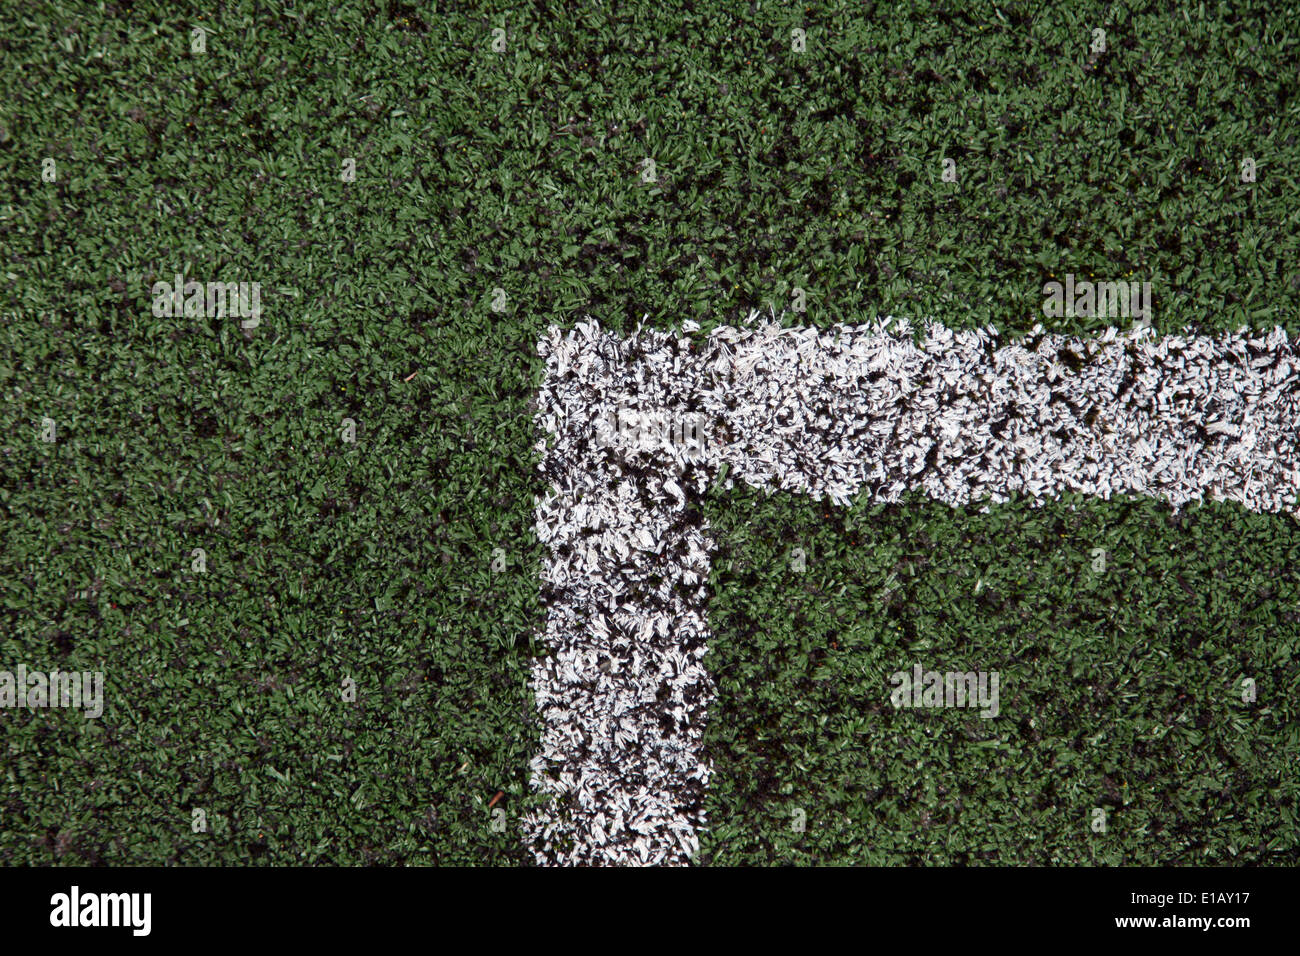 C'est une photo de lignes blanches qui sont peintes sur la pelouse synthétique dans un court de tennis. C'est un close-up vue d'en haut Banque D'Images